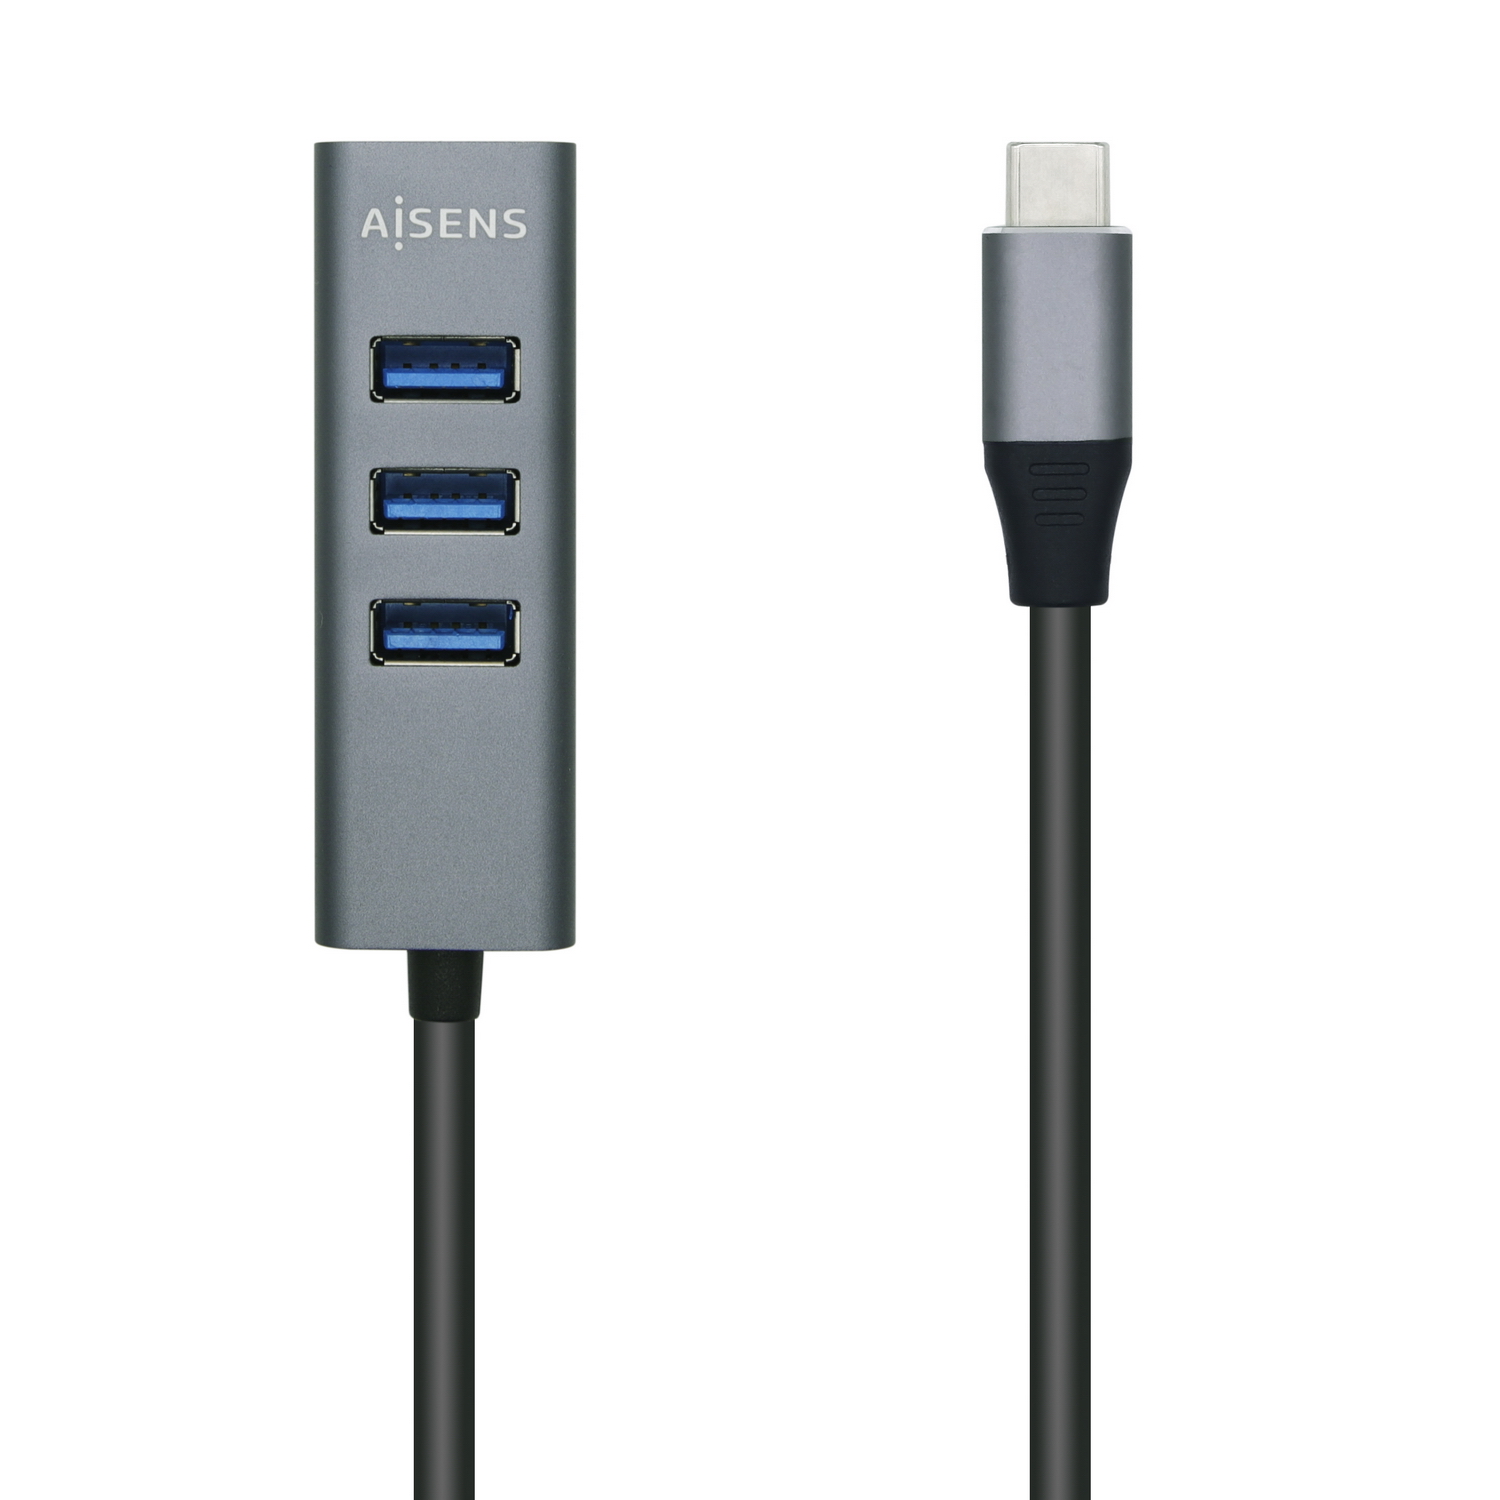 kalb | Hub USB encastrable, Gris argenté, Prise pour Smartphone, Tablette,  e-Reader Encastrement dans Le Meuble 12V